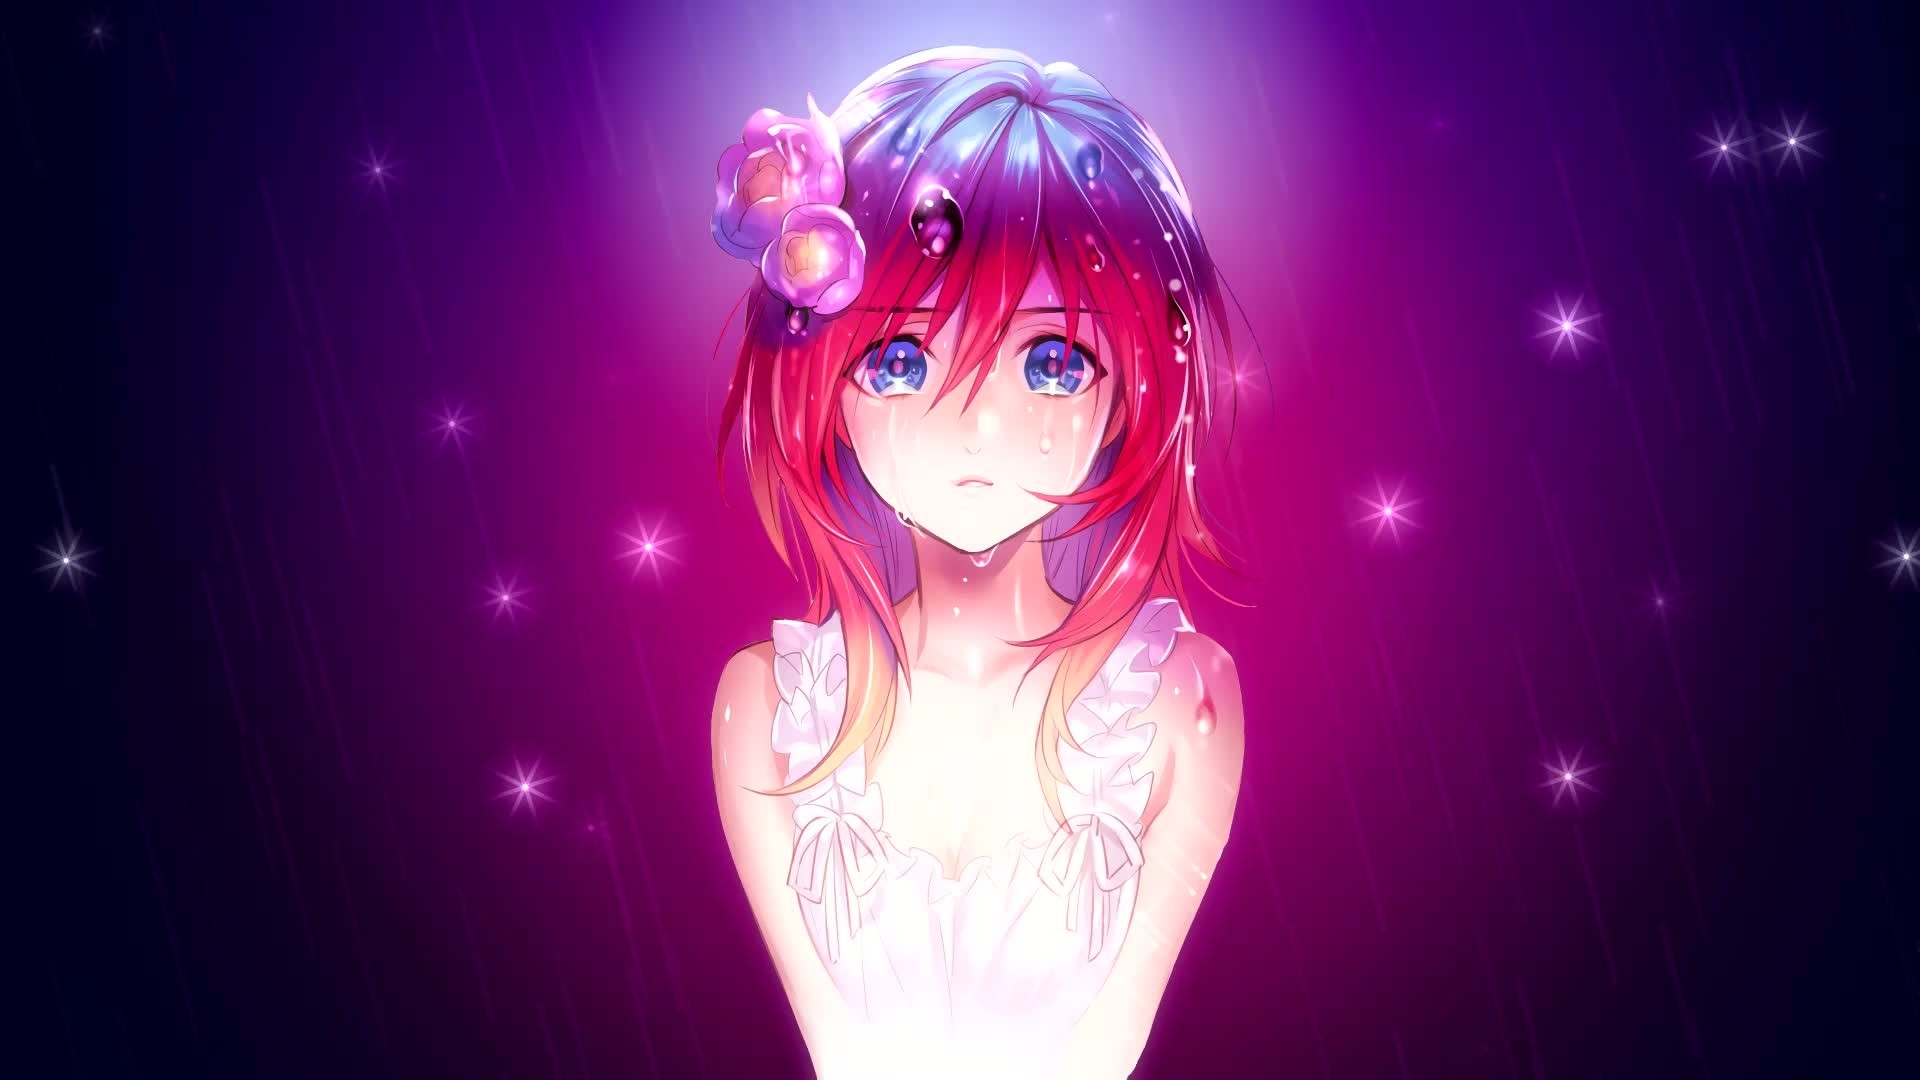 Cute Anime Girl Desktop wallpaper